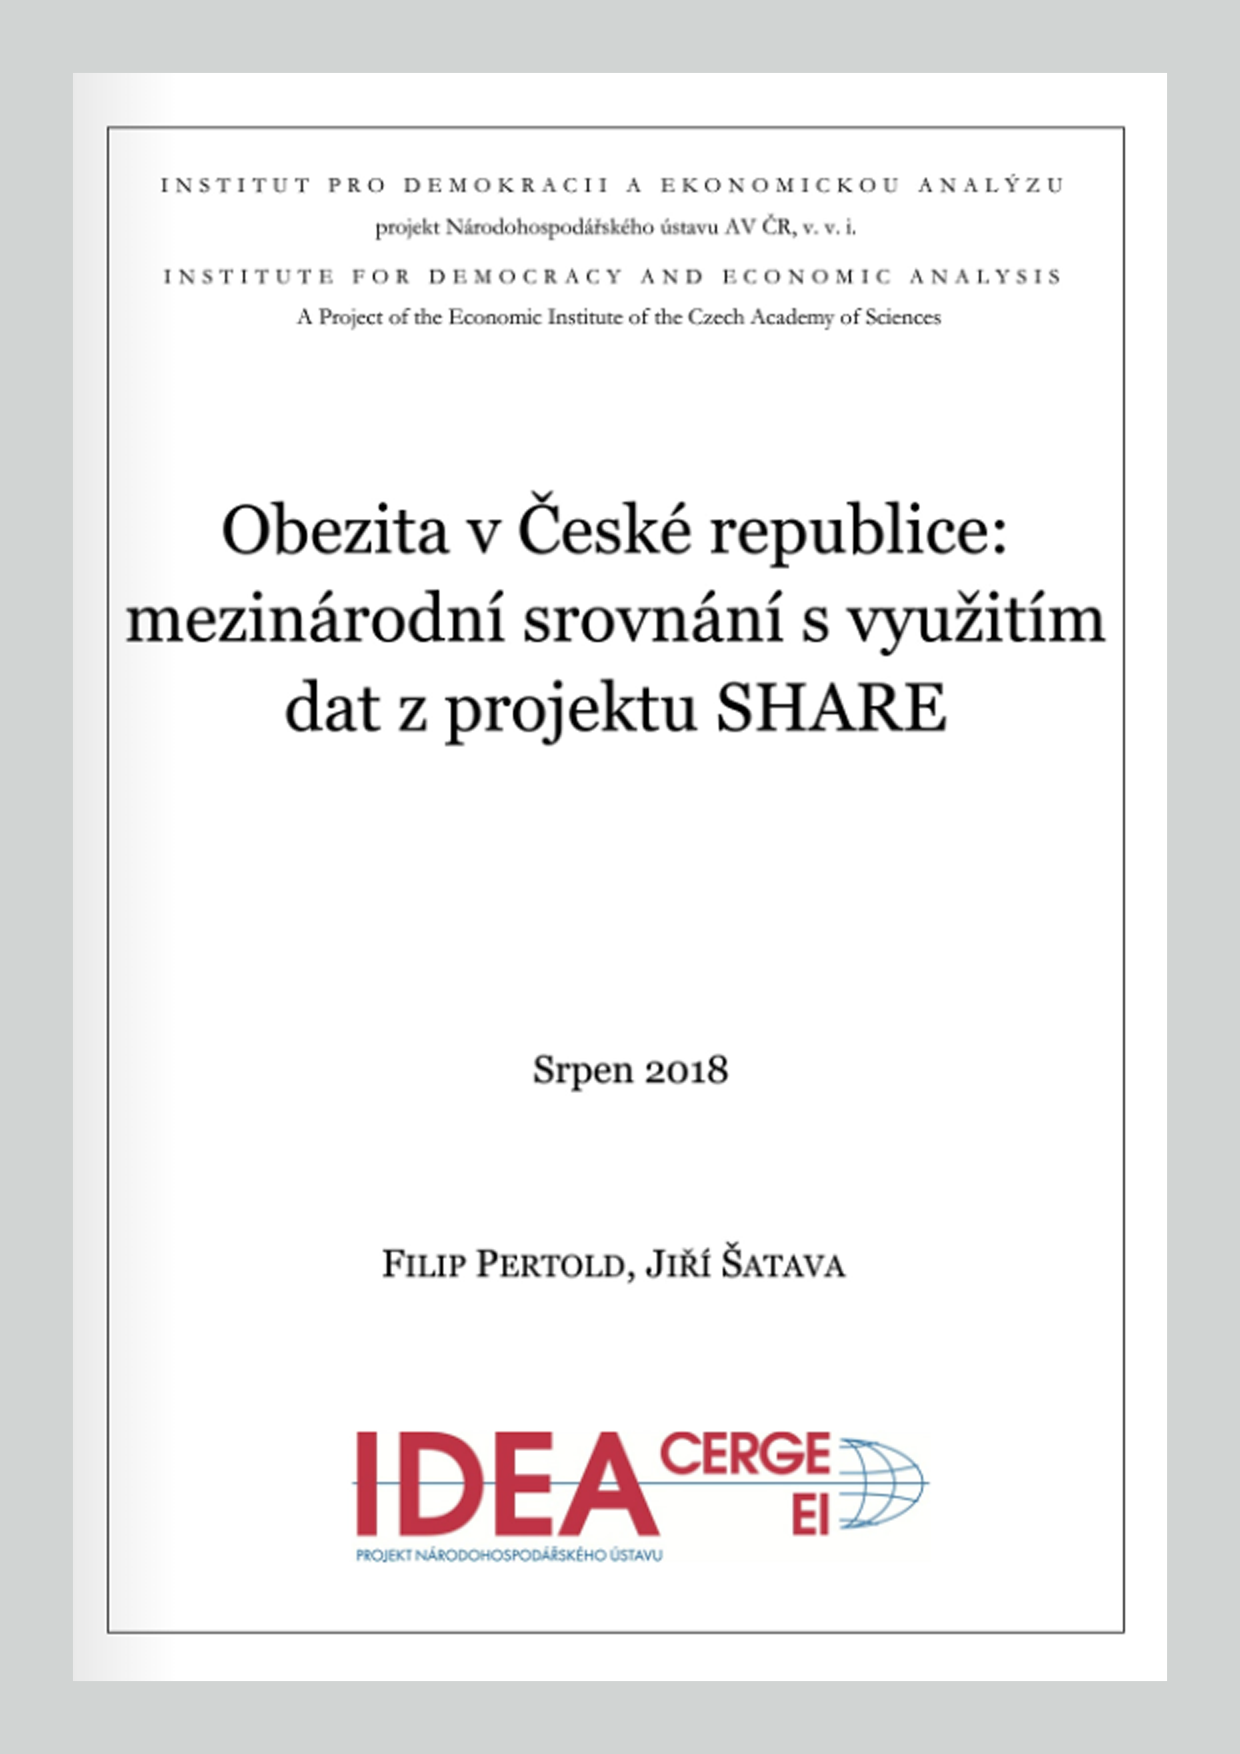 Obezita v České republice: mezinárodní srovnání s využitím dat z projektu SHARE